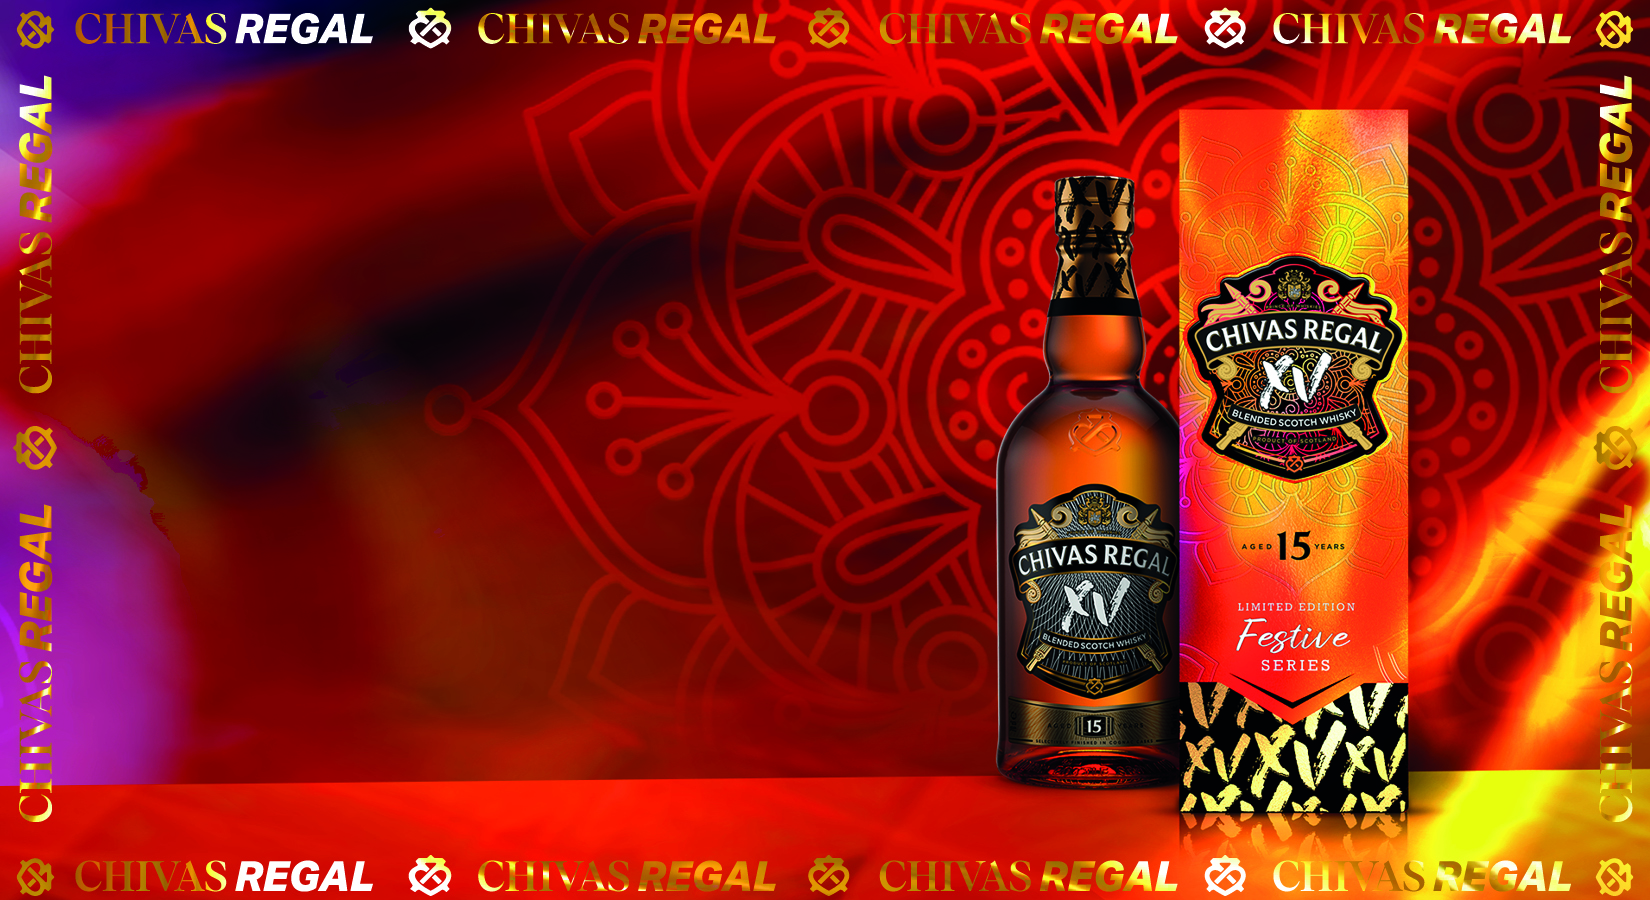 Chivas XV Blended Scotch Whisky Festive Series